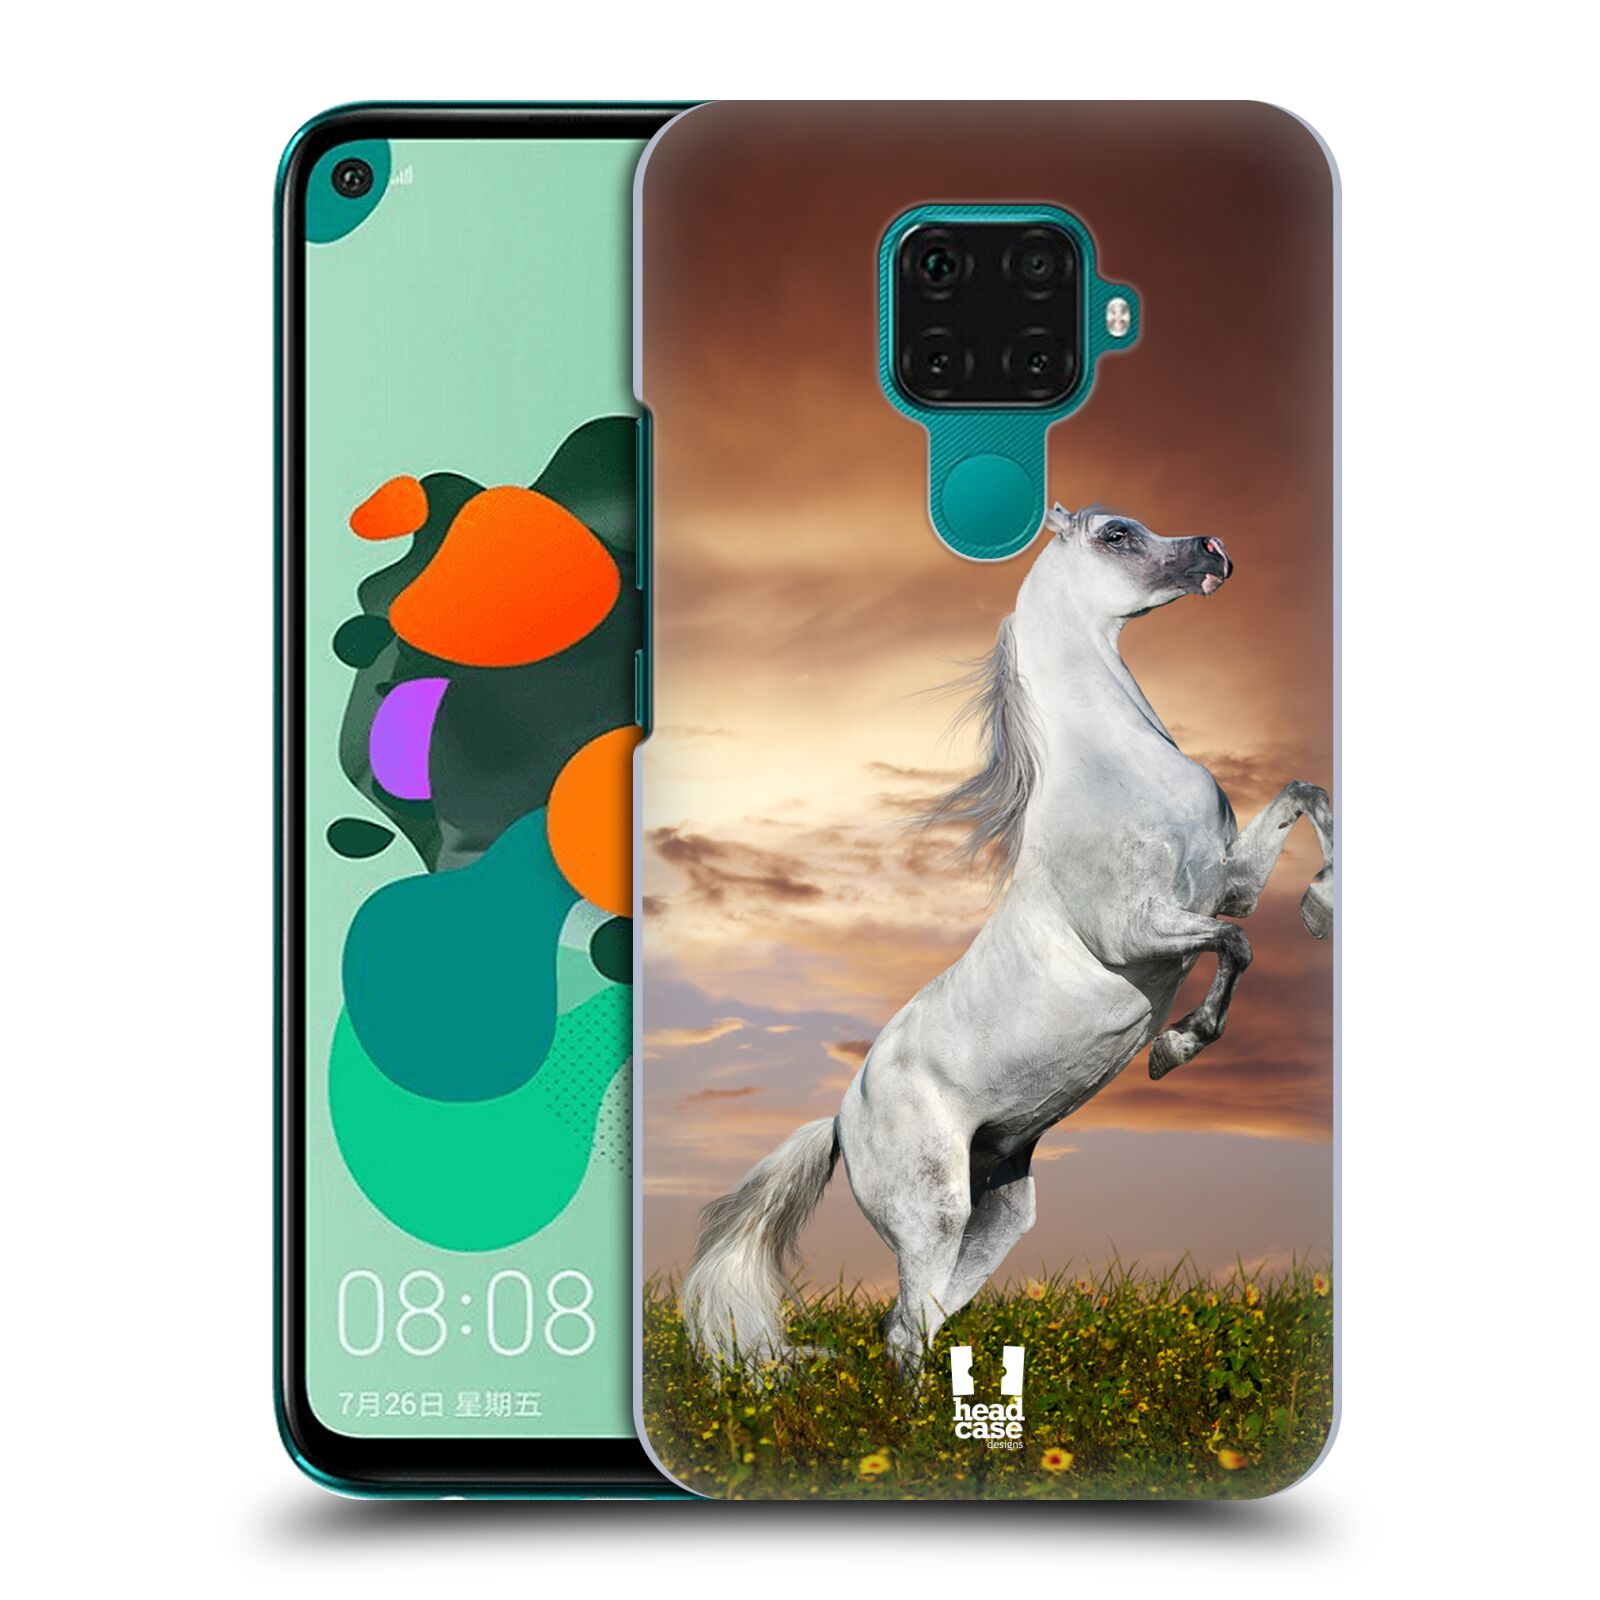 Zadní obal pro mobil Huawei Mate 30 LITE - HEAD CASE - Svět zvířat divoký kůň